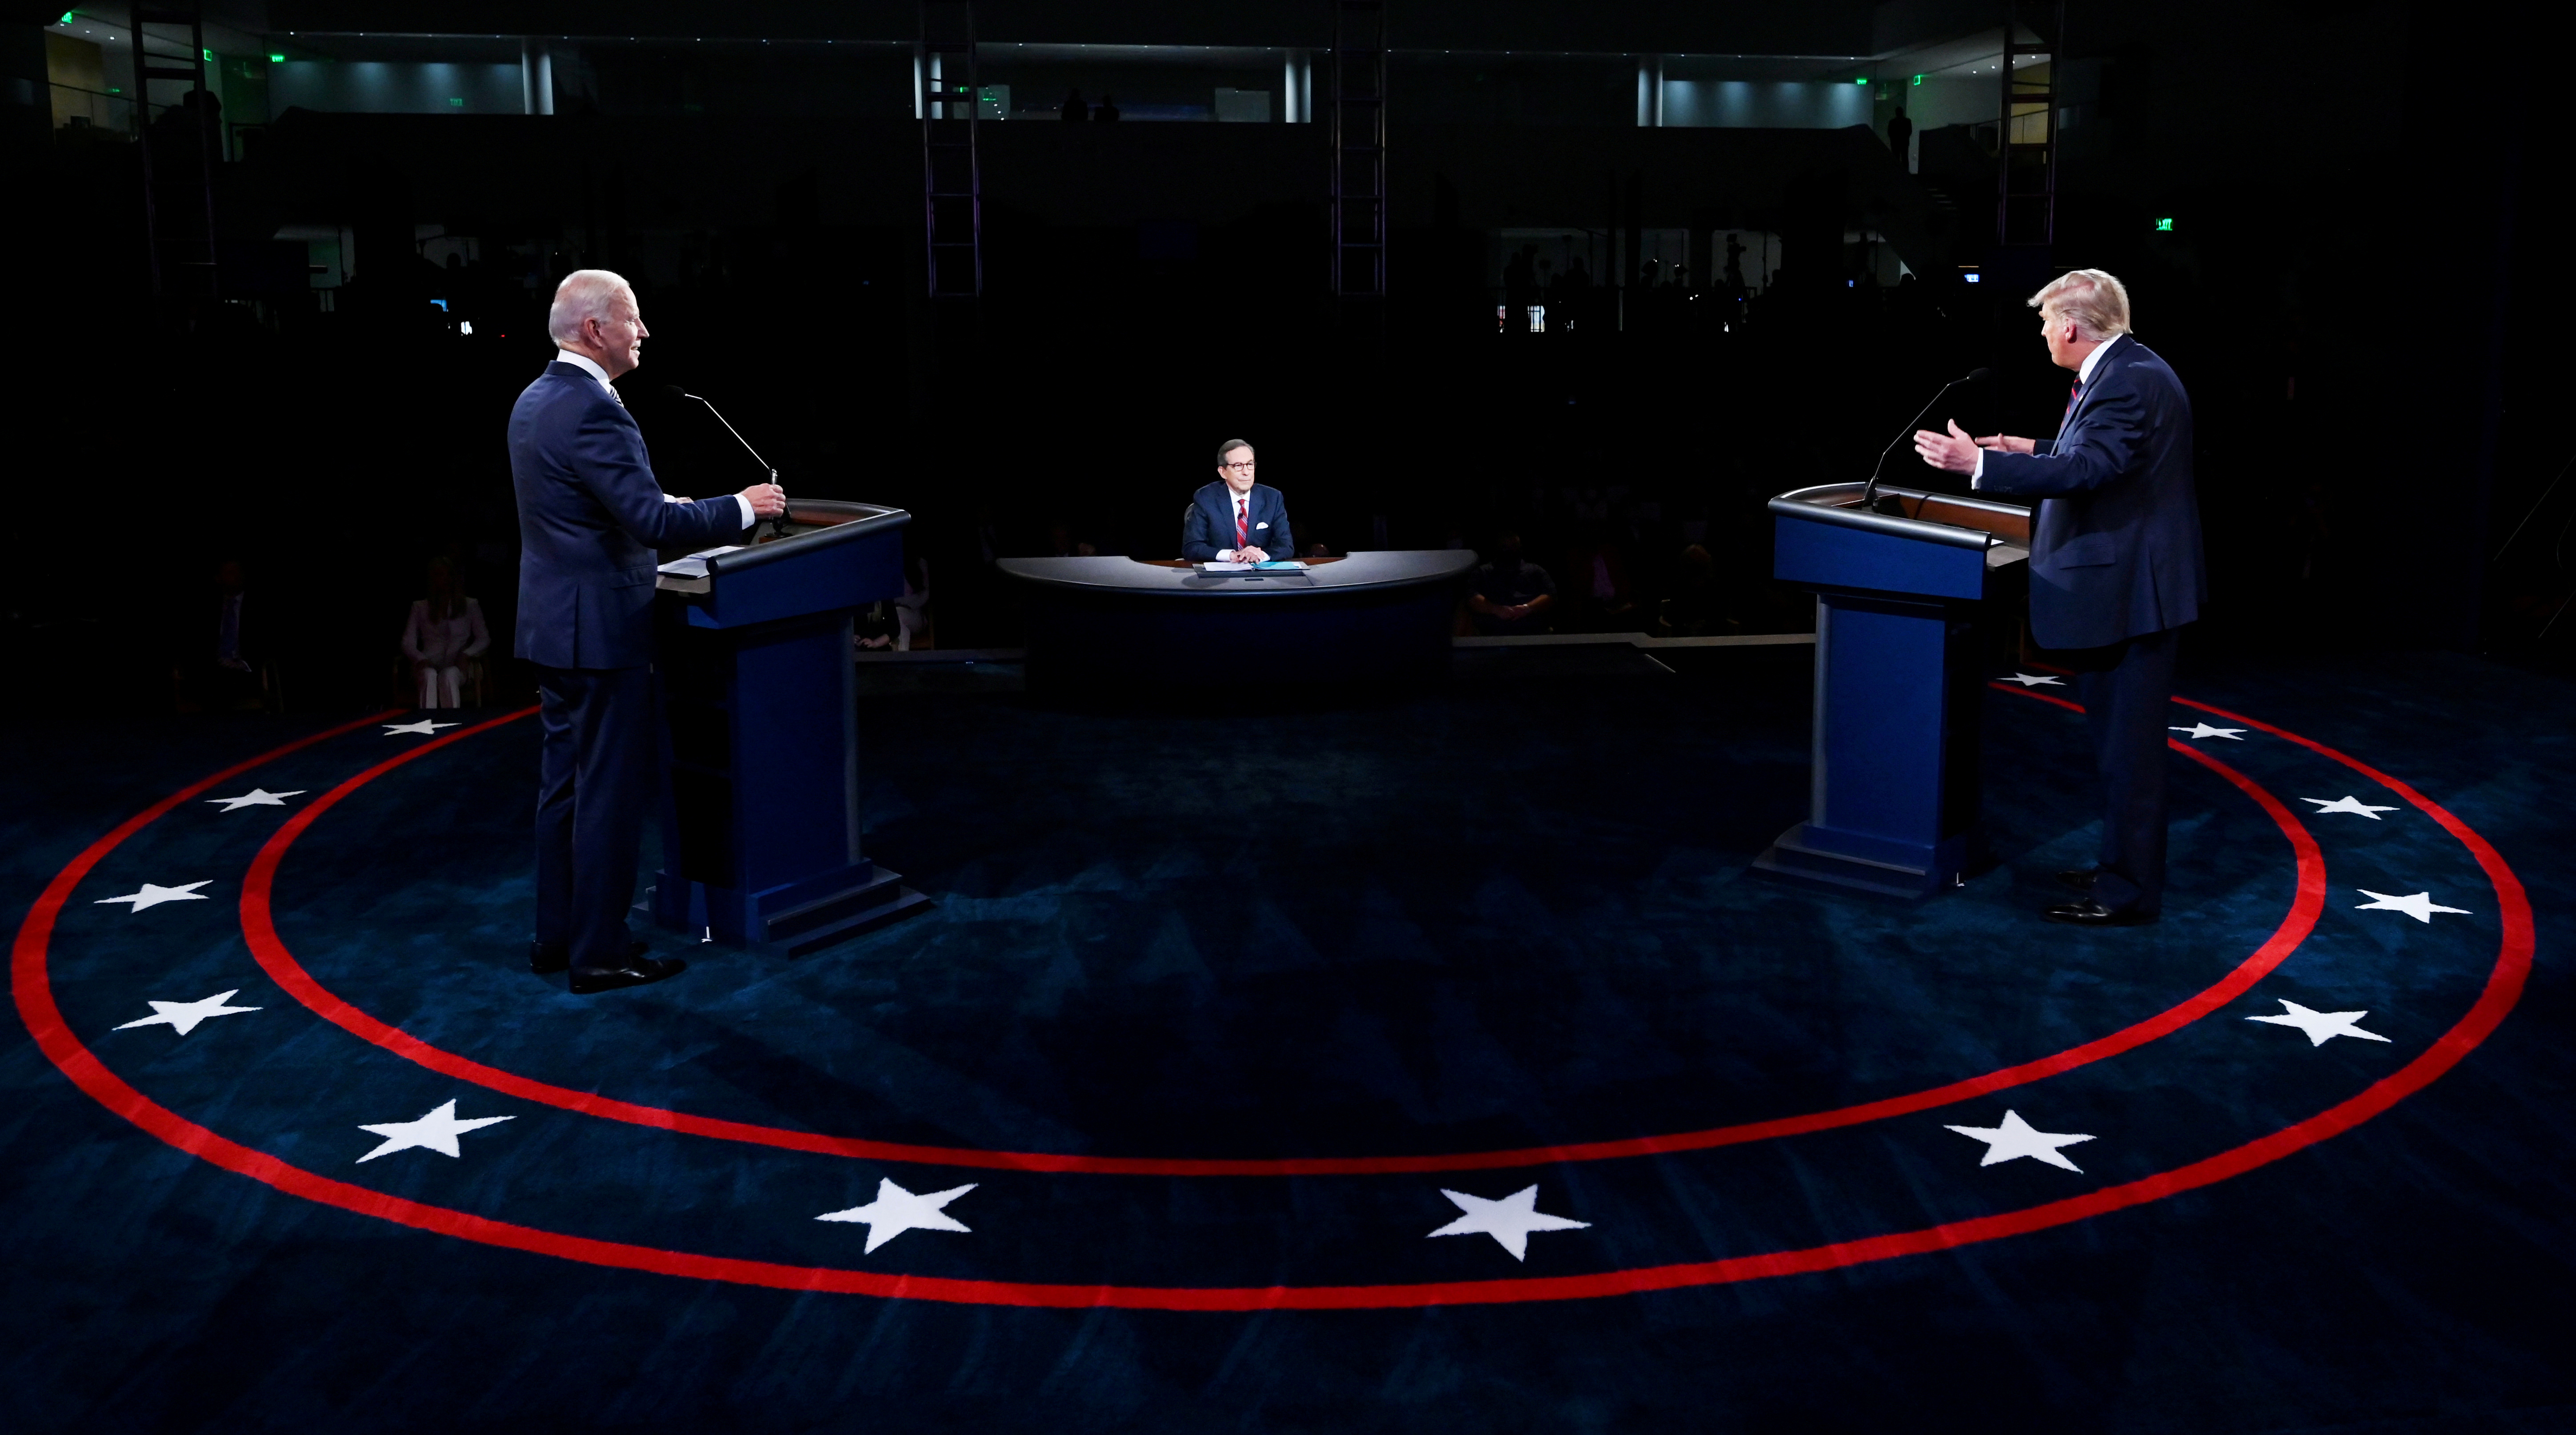 El debate no cambió de manera sustancial las expectativas de los analistas para la elección de noviembre (Reuters)